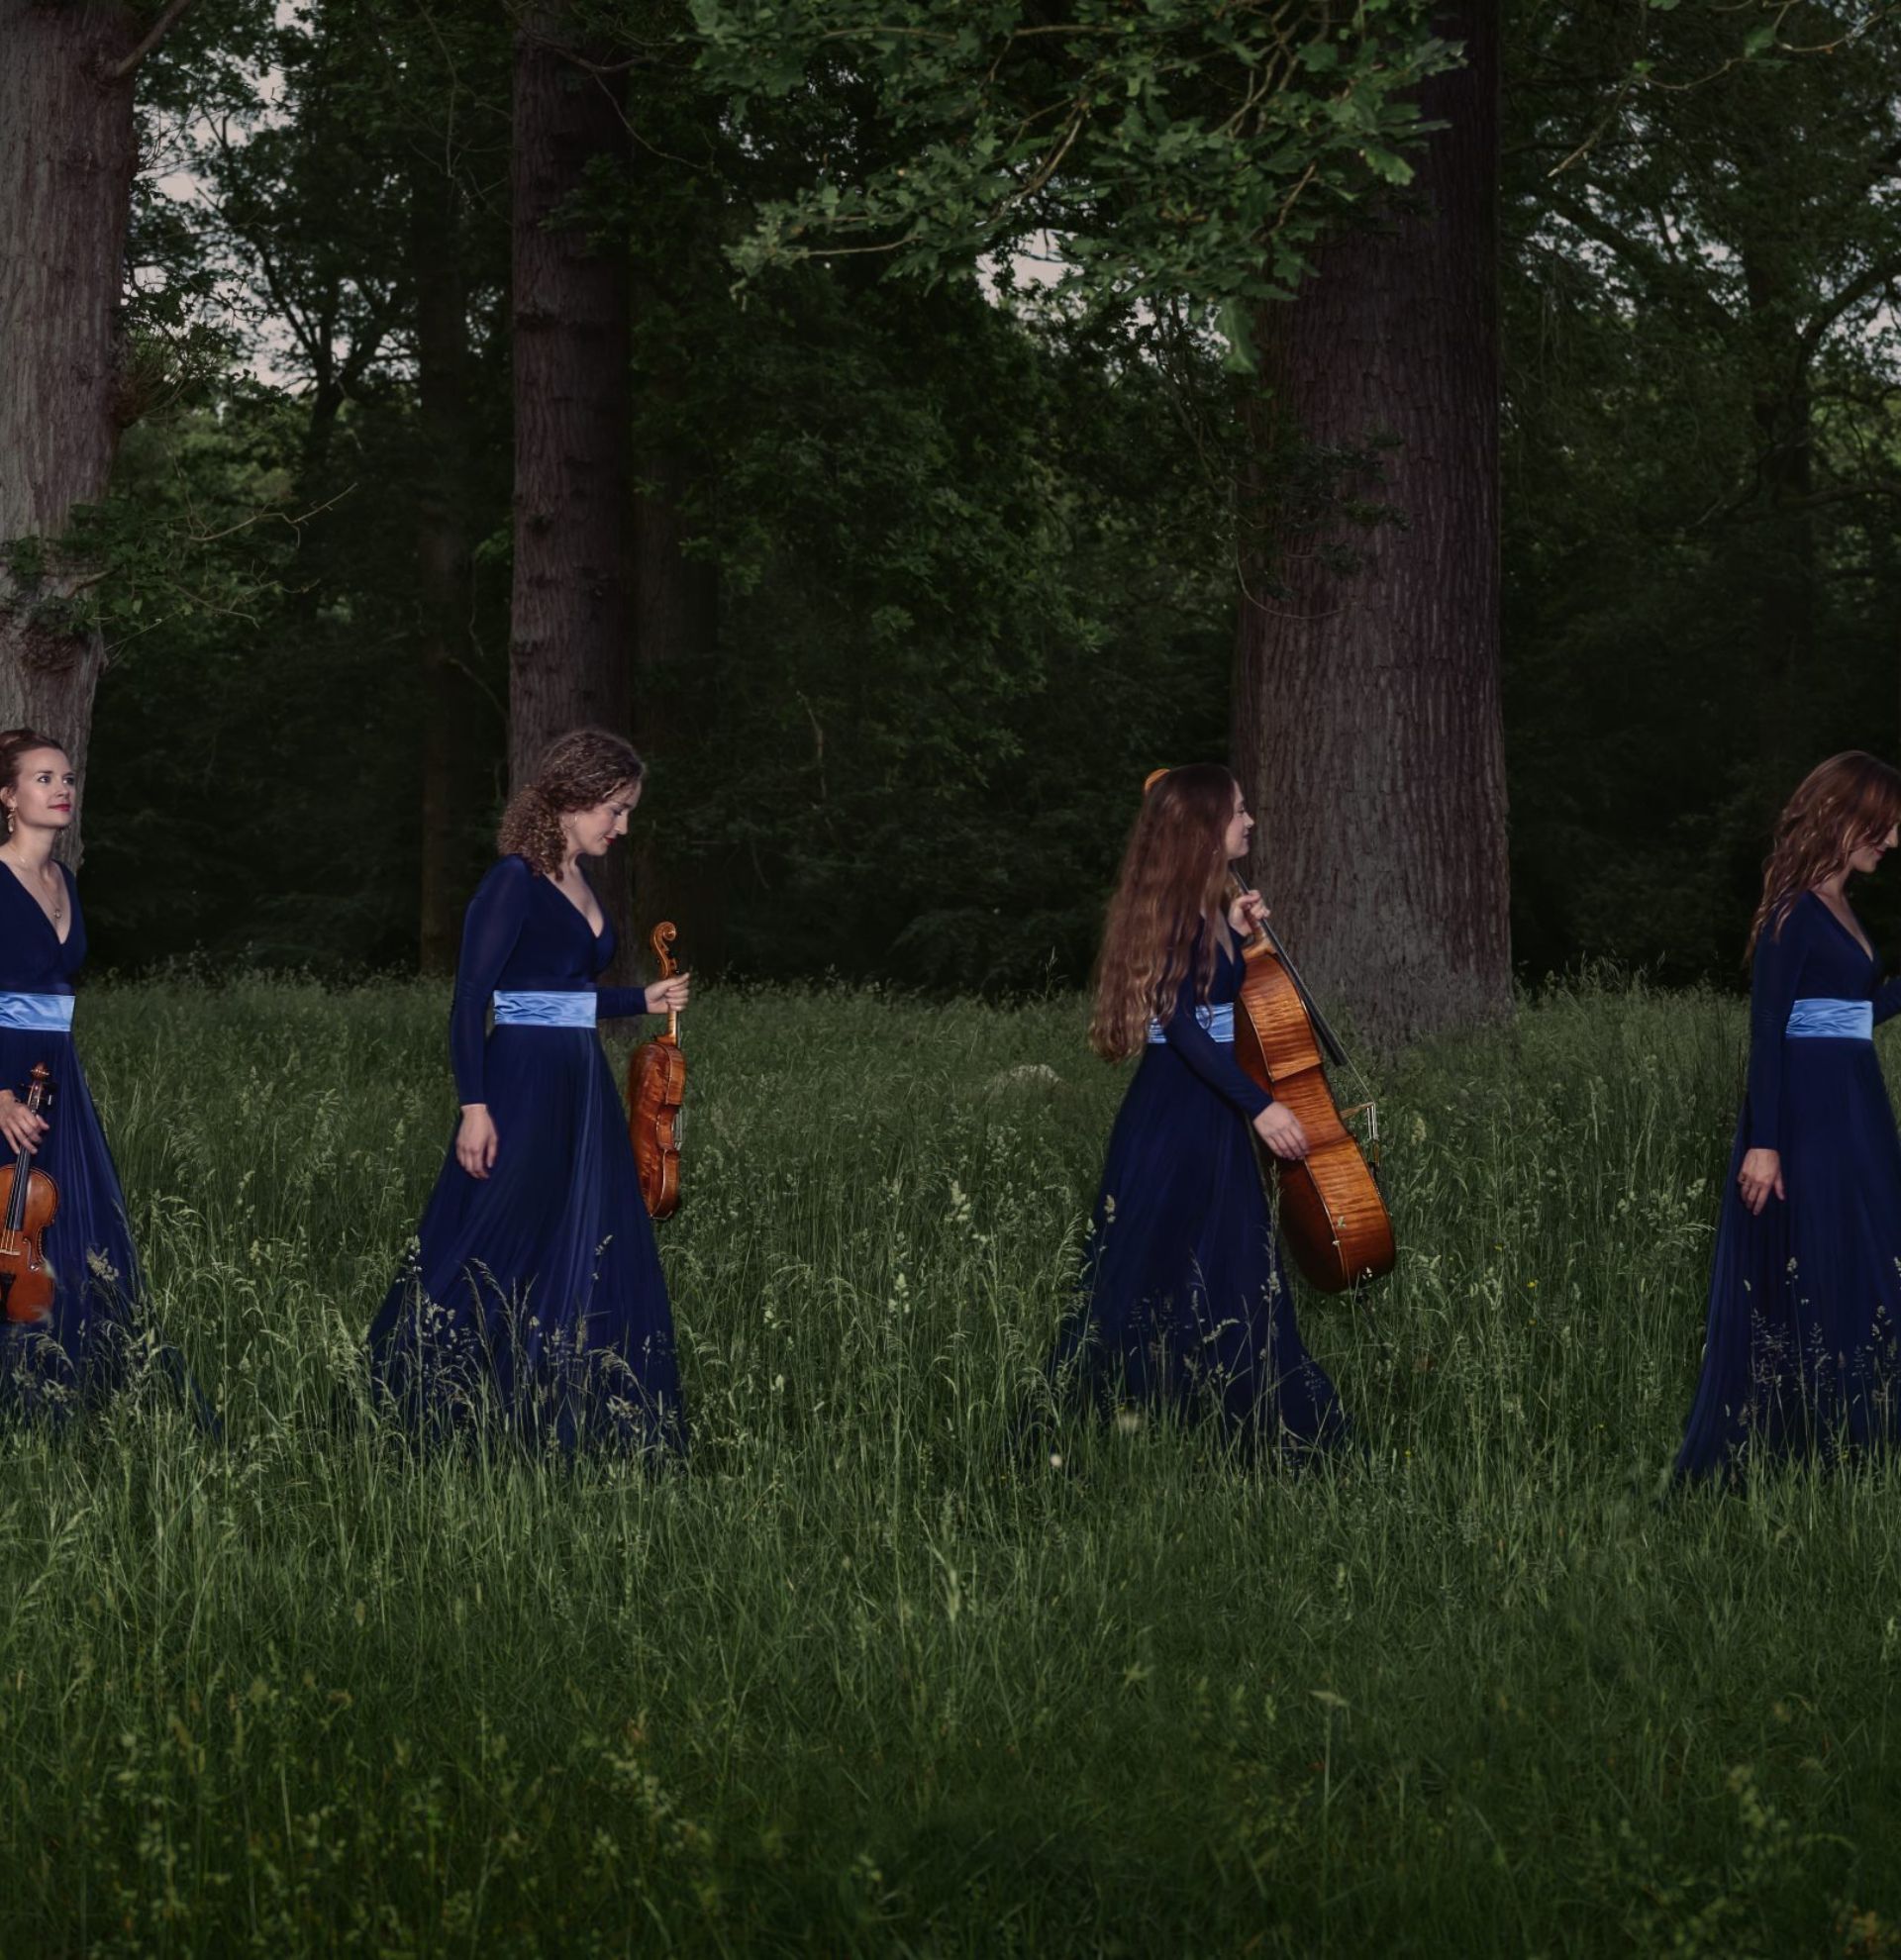 Nightingale String Quartet